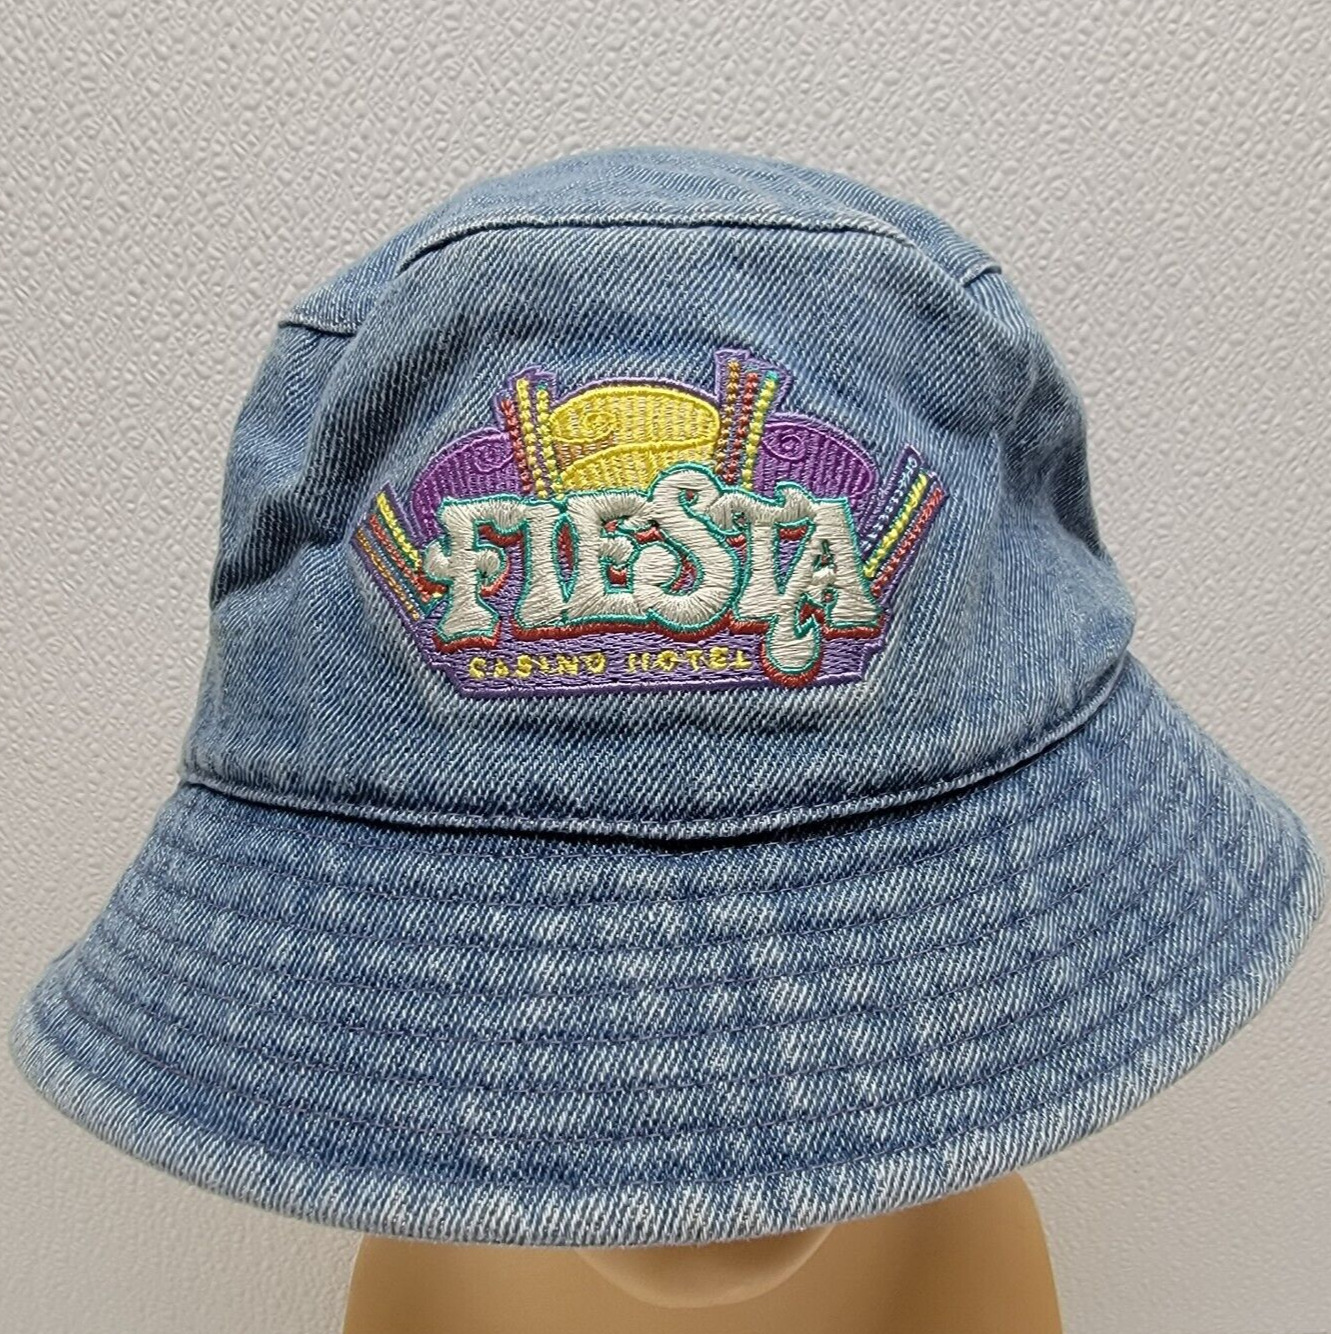 Vintage Fiesta Casino Hotel Denim Bucket Hat - Rare HTF